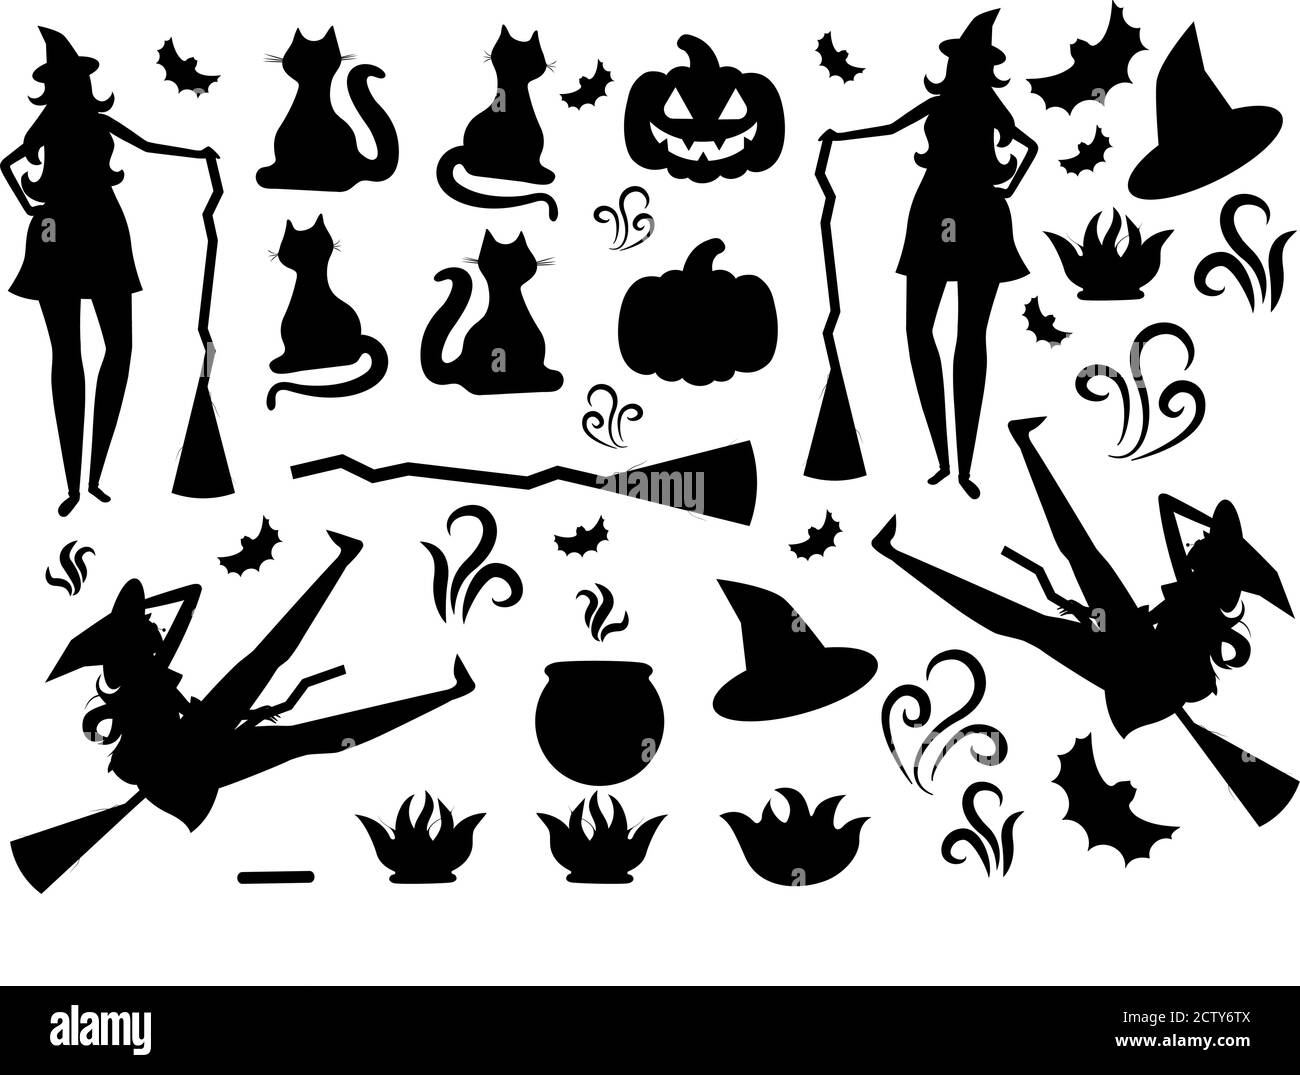 Ce sont les icônes d'Halloween dans le style plat dans cette image. Il y a sorcière, chapeau, chat, chaudière, feu, feu, citrouille, balai. Illustration de Vecteur